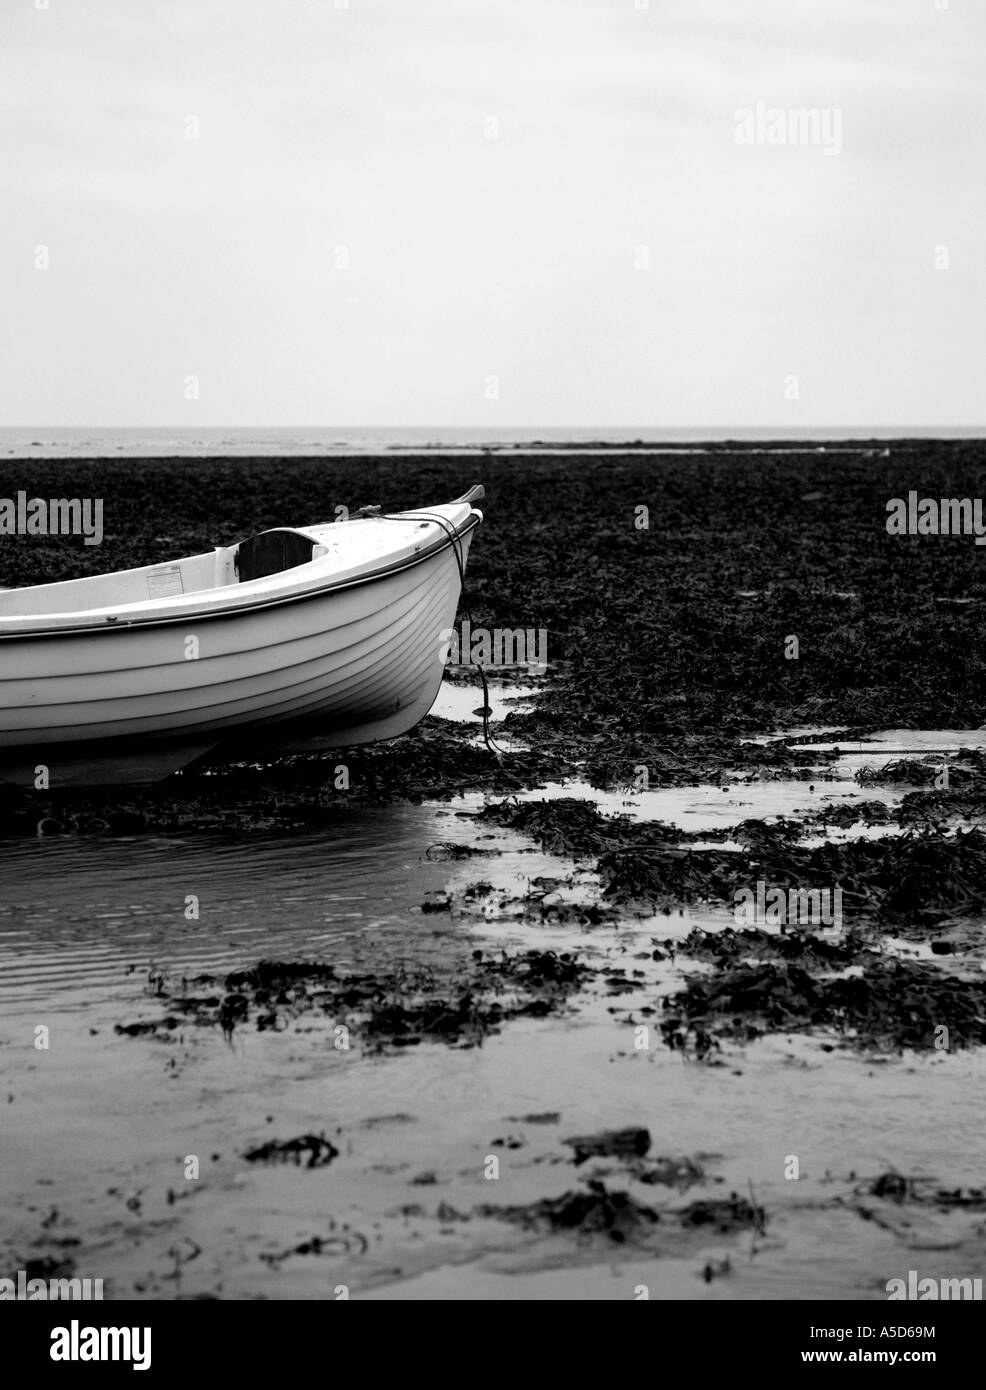 Bateau blanc sur une plage couverte d'algues prises en noir et blanc Banque D'Images